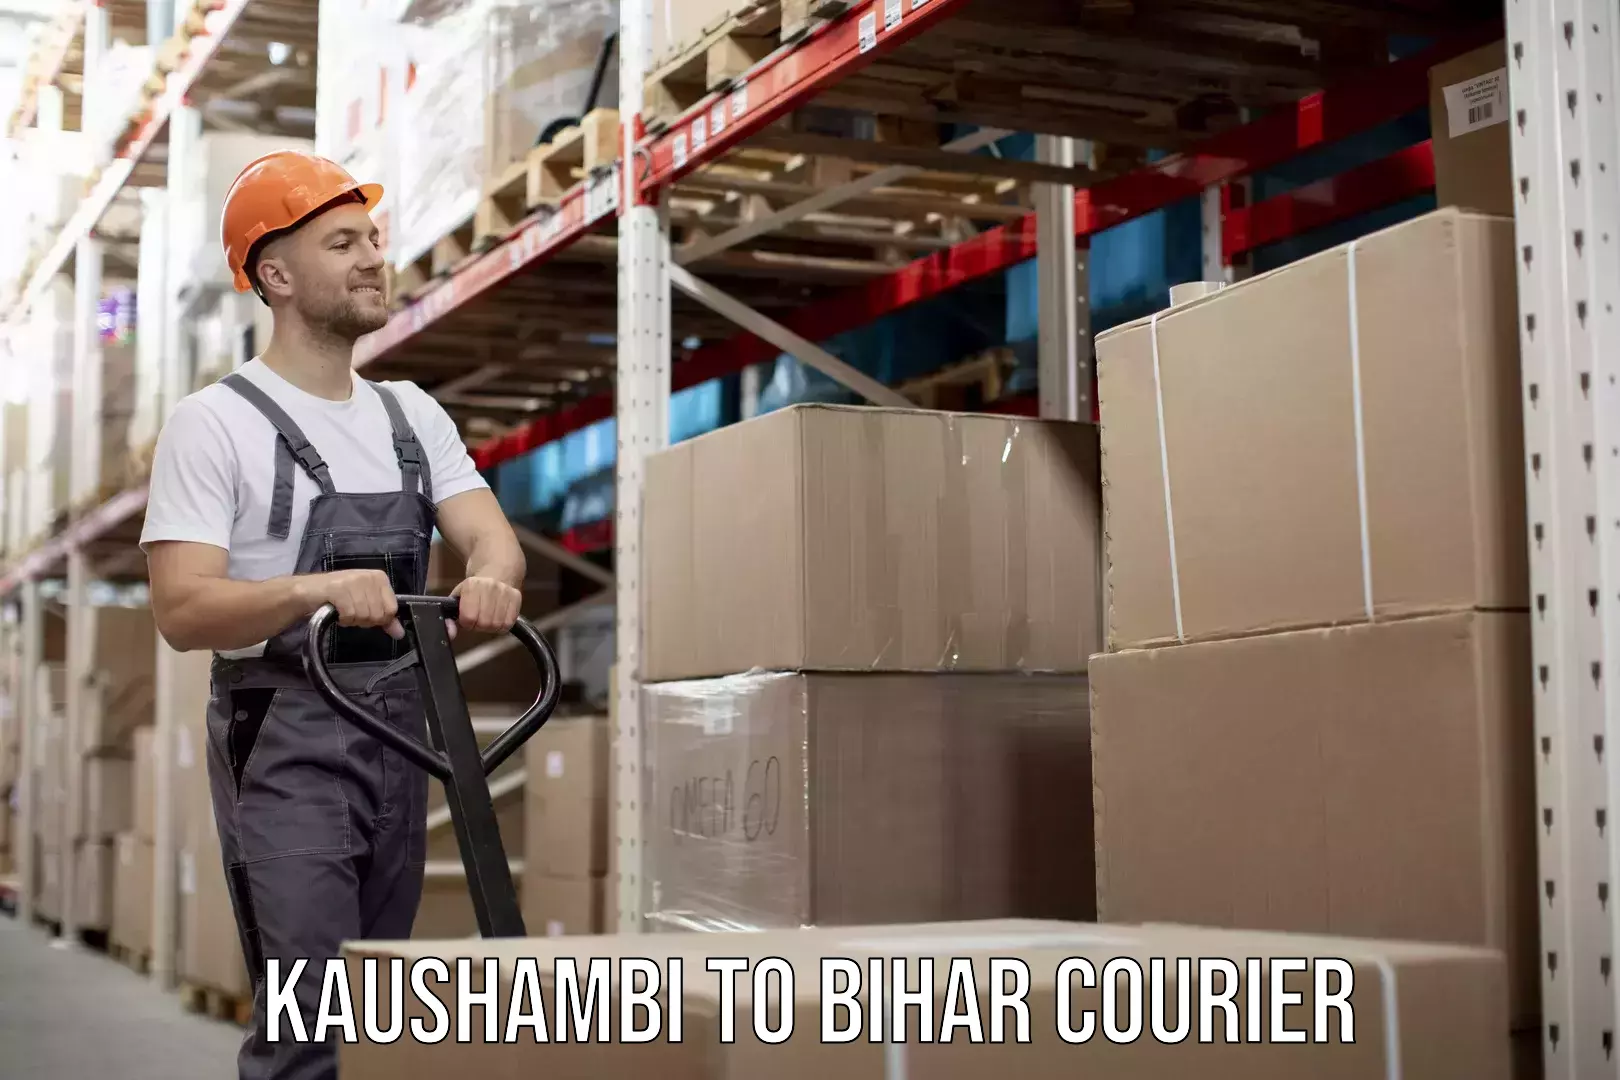 Furniture relocation experts Kaushambi to Bihar